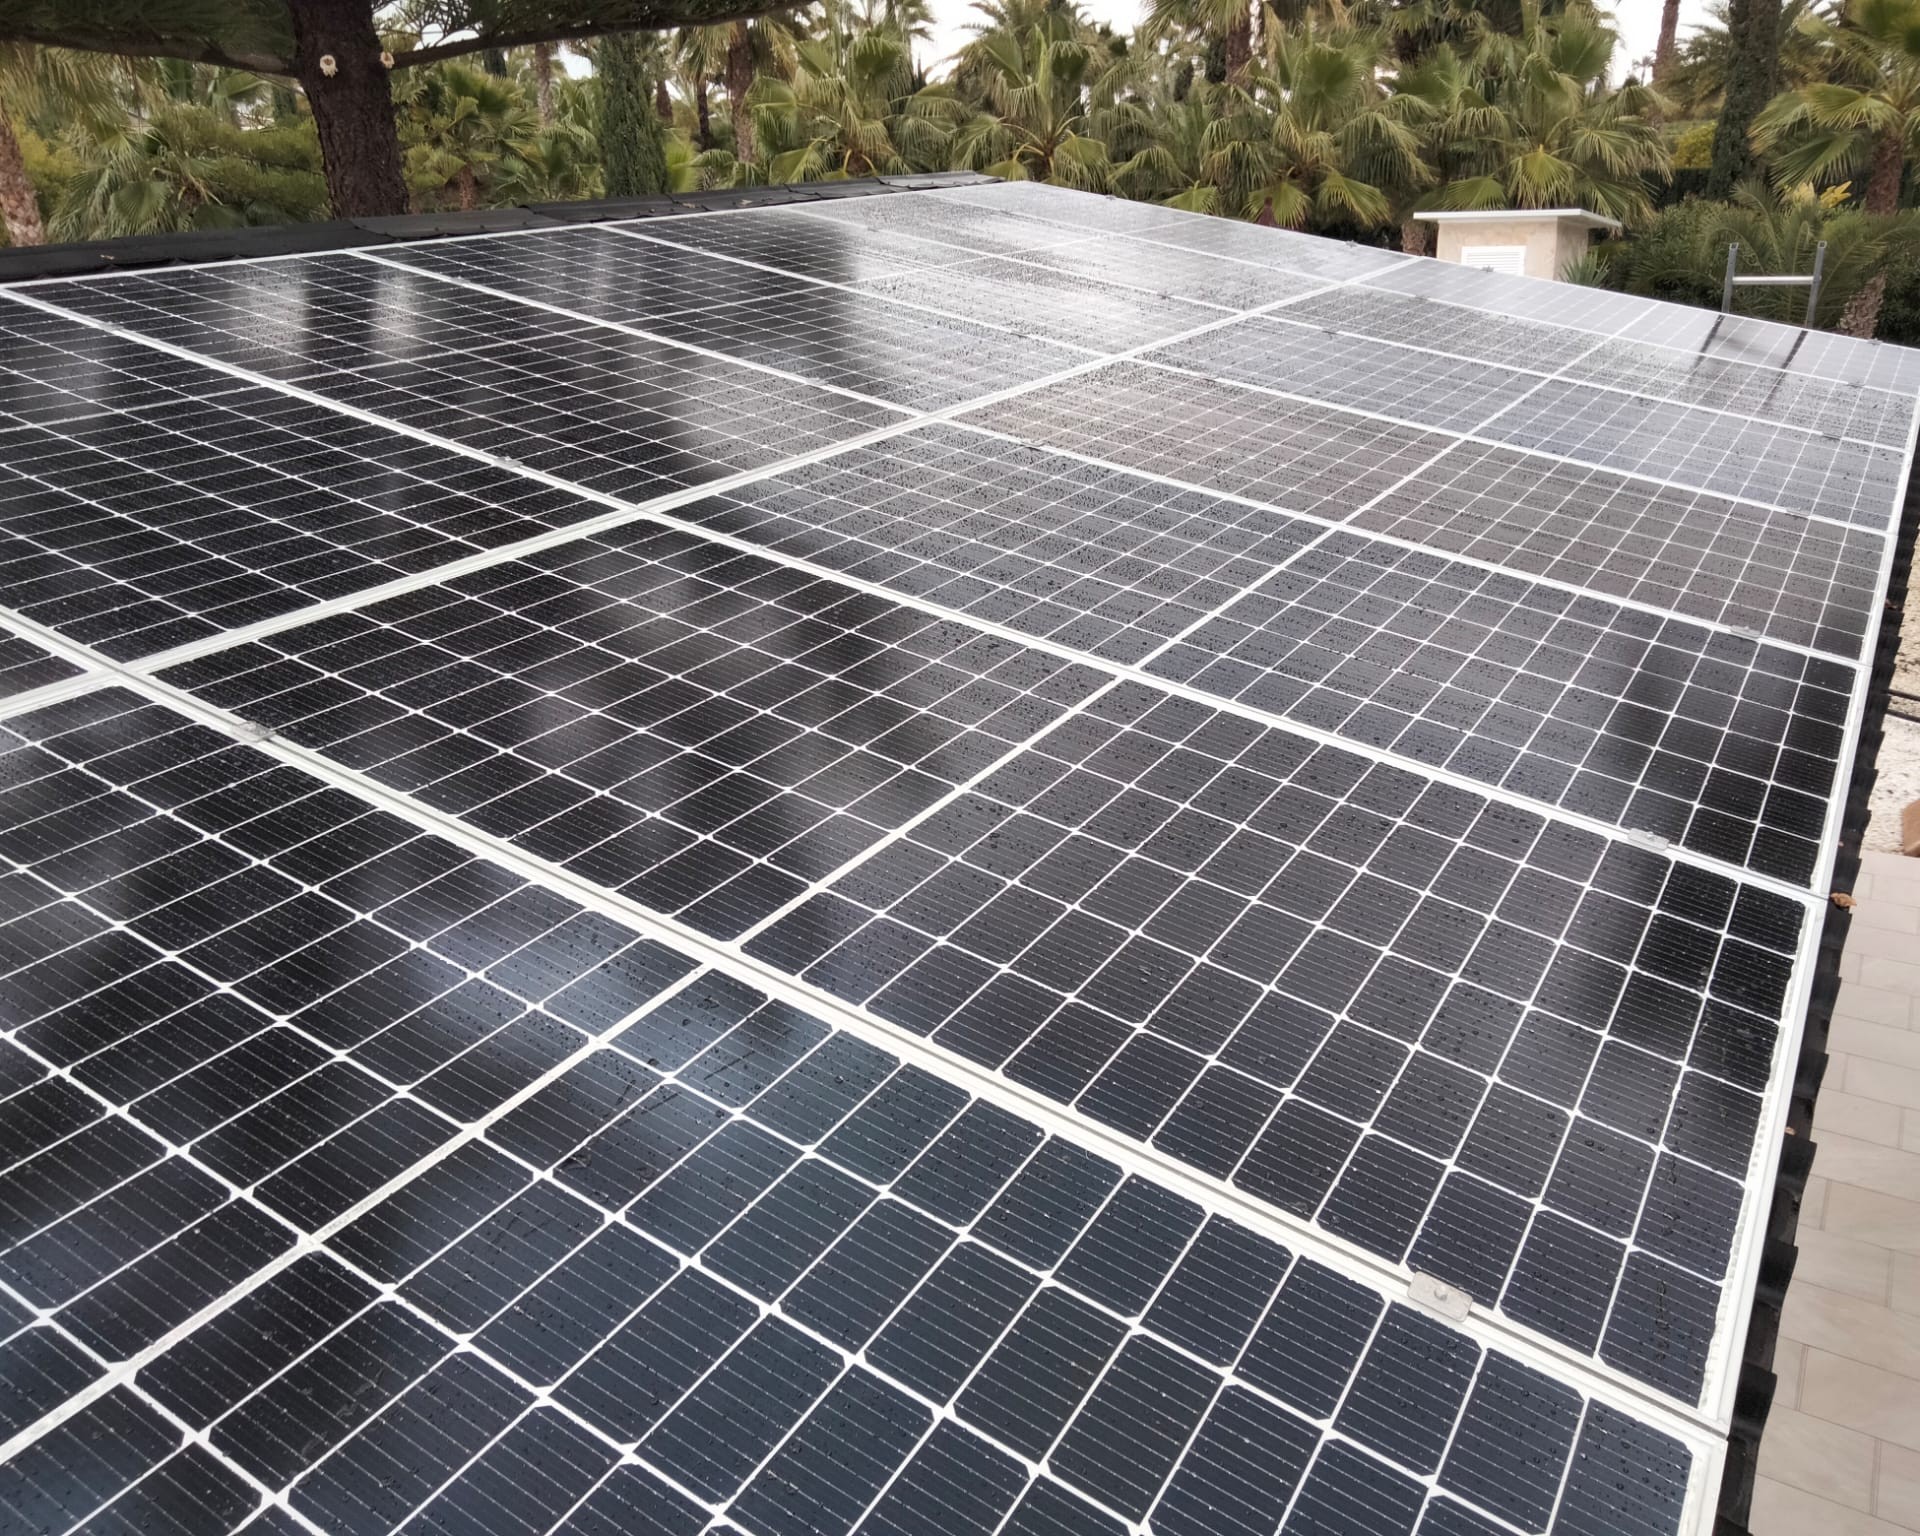 14X 455 wp Solar Panels, Daya Vieja, Alicante (Hybrid system)